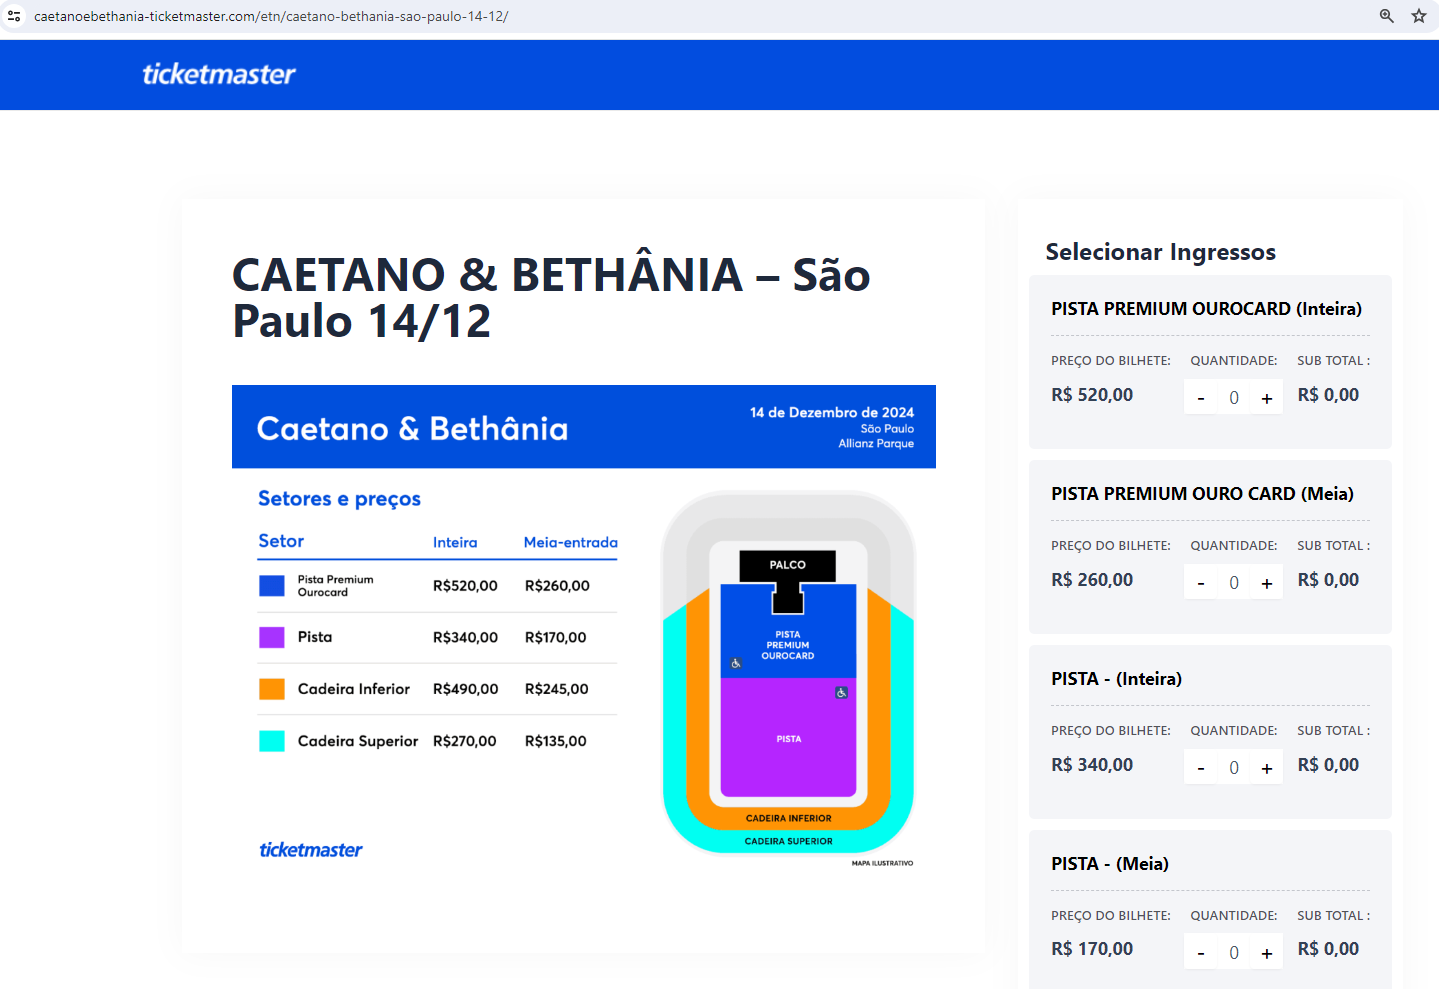 Print de página golpista copia o cabeçalho do site da Ticketmaster e mostra os setores de um estádio indicados por cores. Na coluna à esquerda, são exibidos os tipos de ingresso que o consumidor pode escolher, cujos valores chegam a R$ 520.